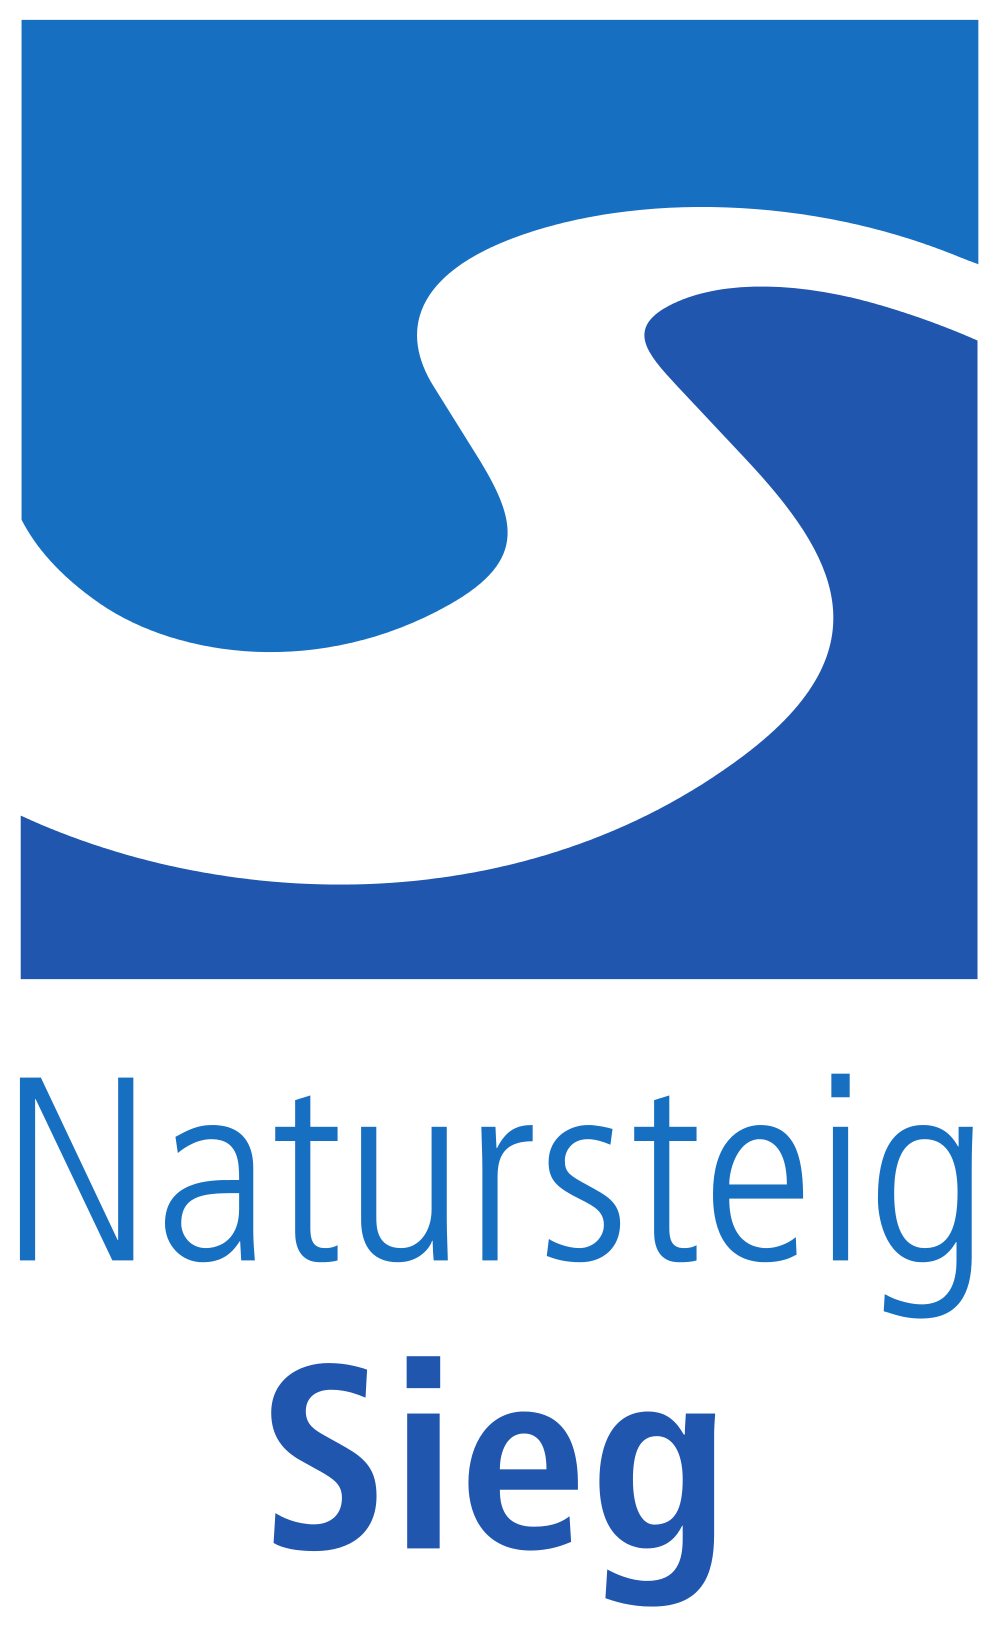 Natursteig Sieg Logo svg